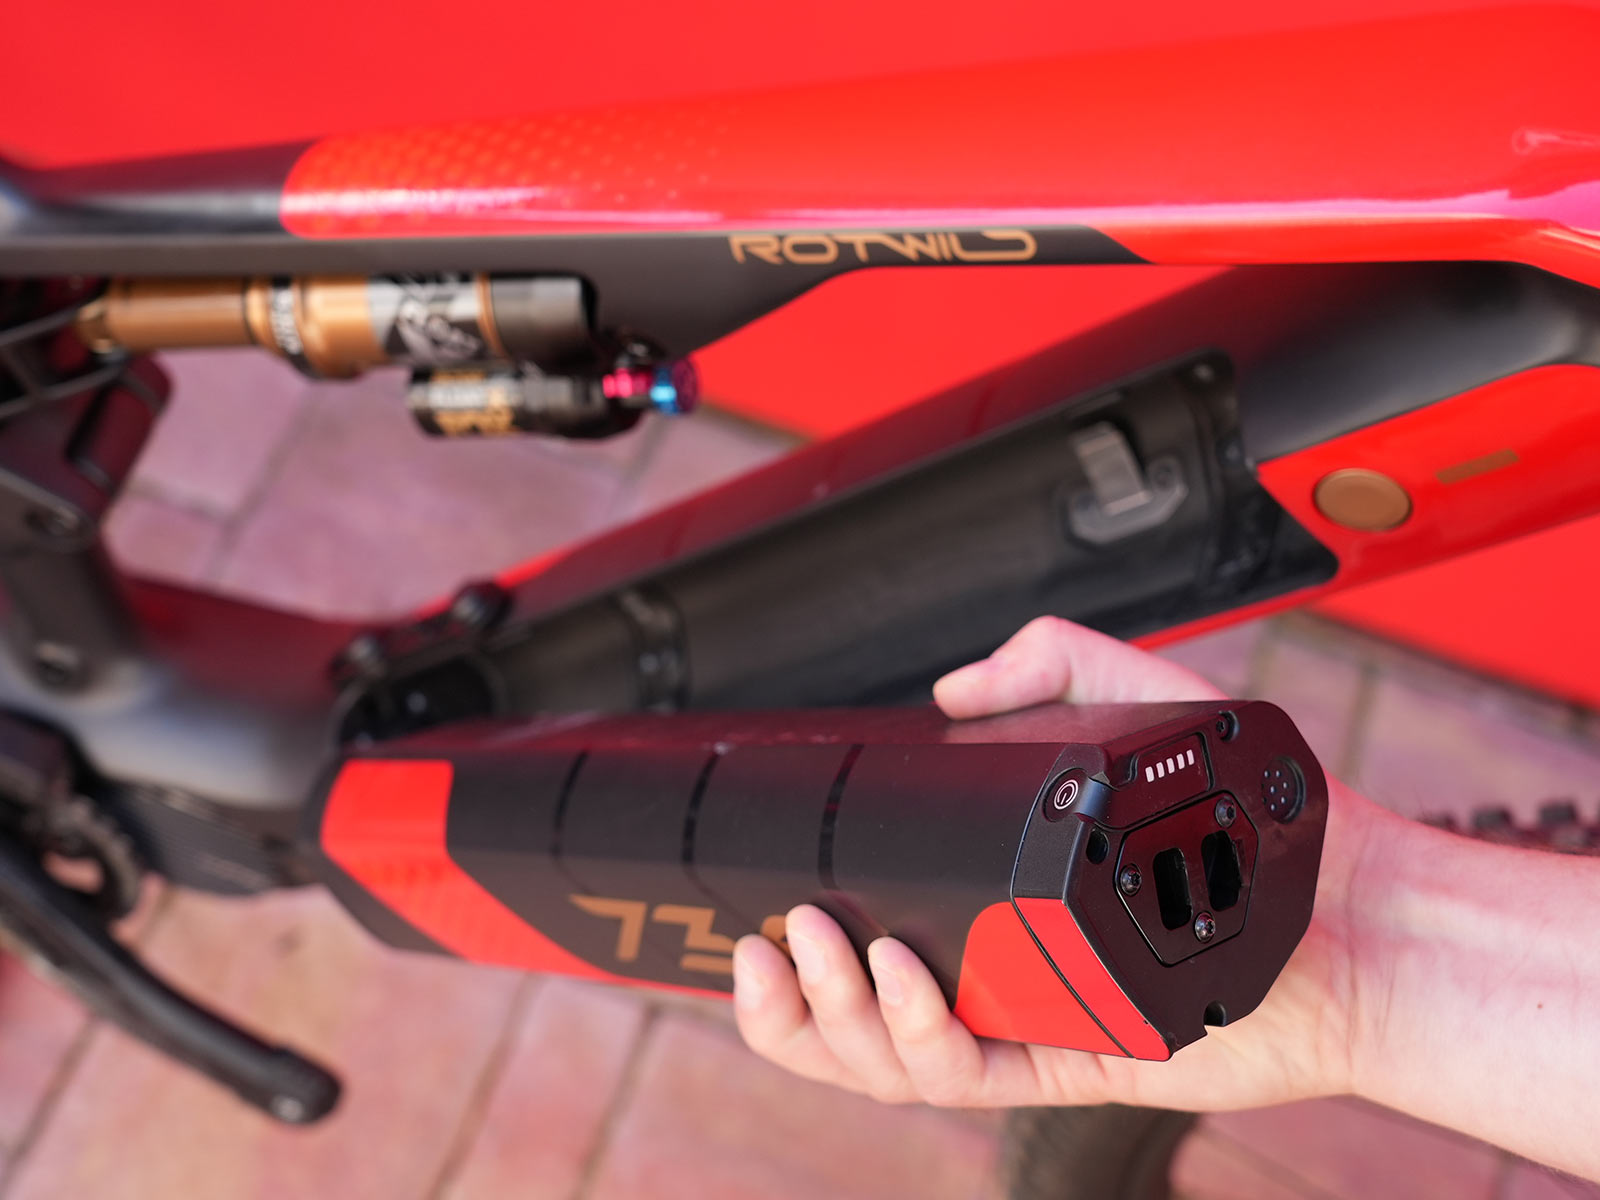 rotwild rx735 lightweight e-mountain bike battery details